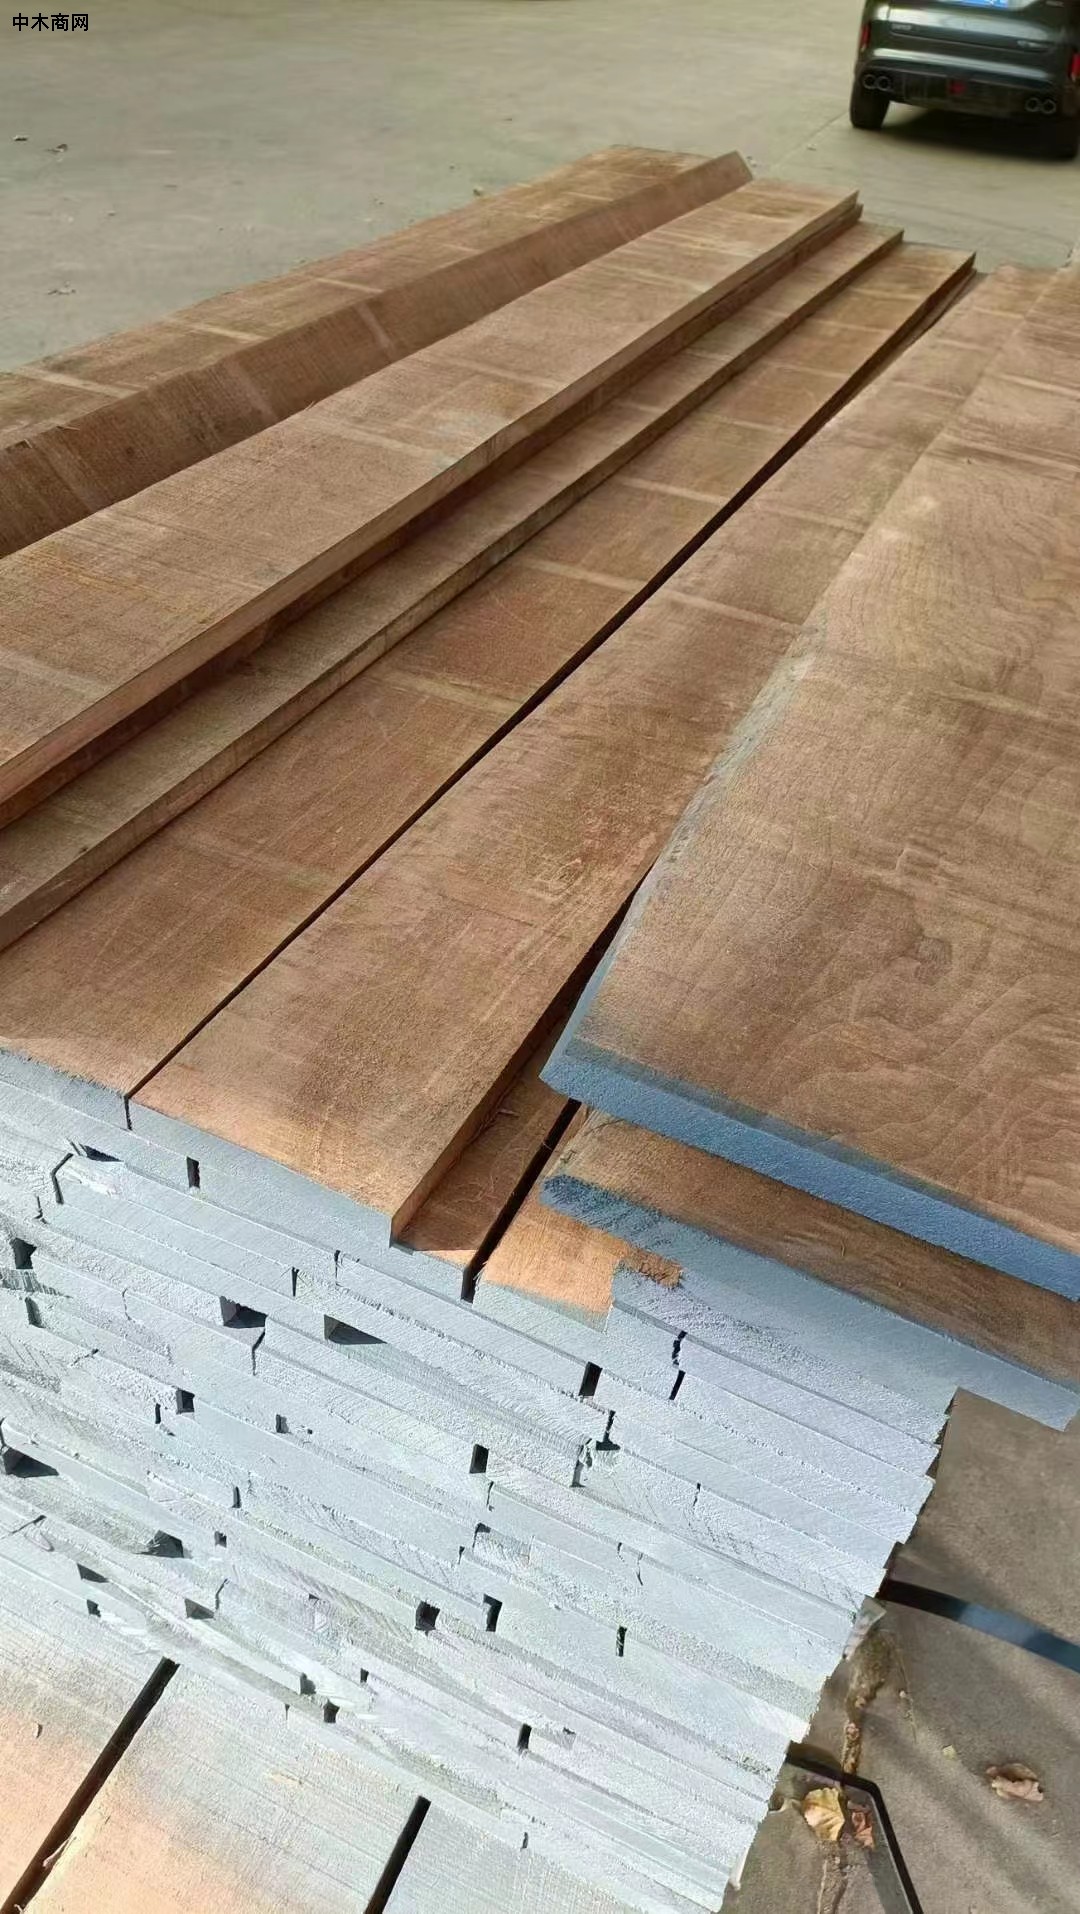 永晟木业核桃木板材产品图片供应